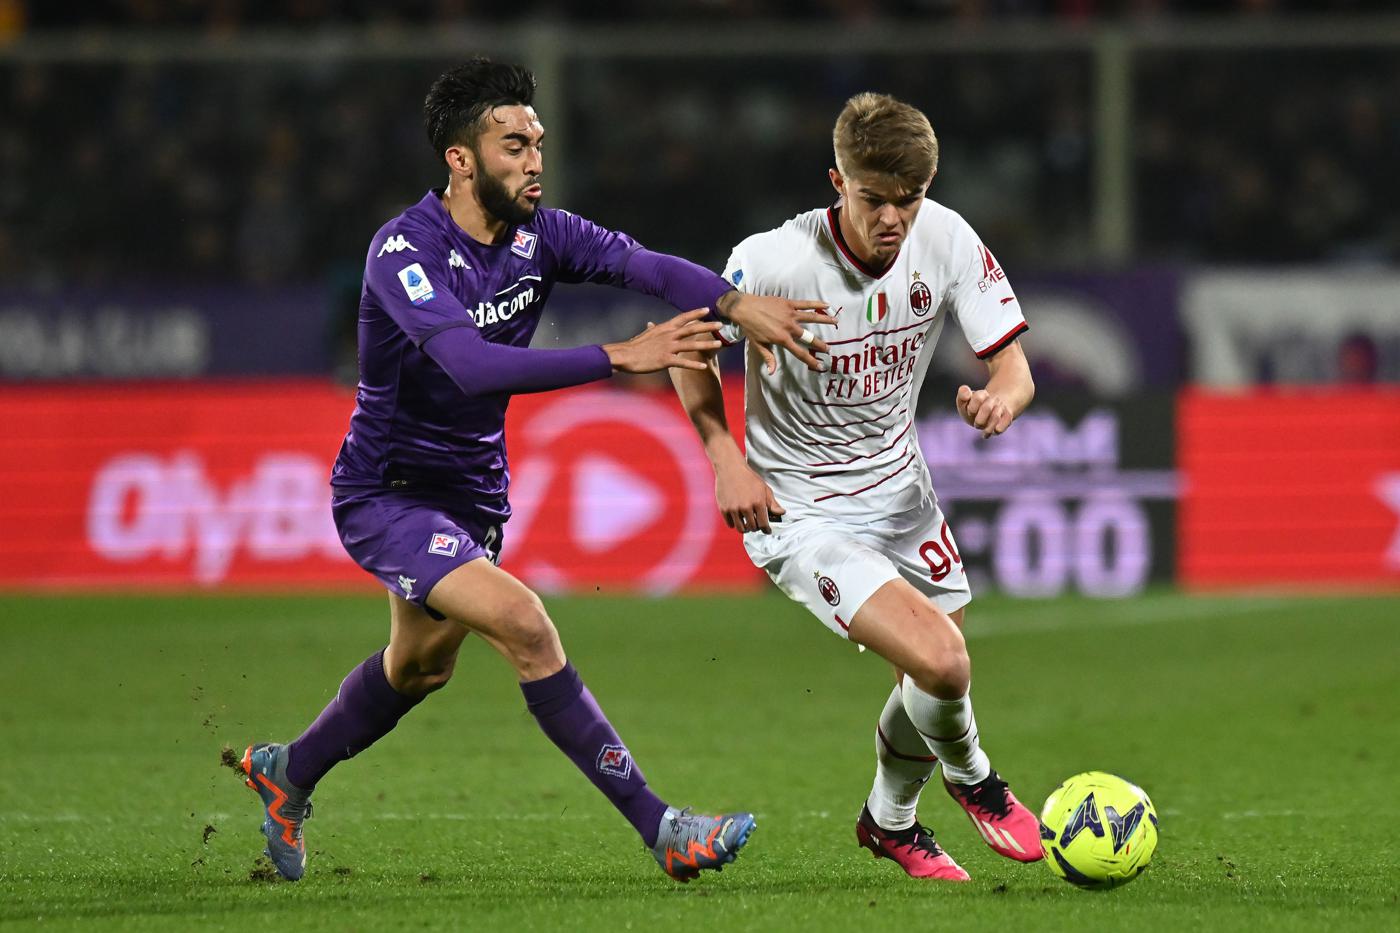 Fiorentina vs Milan - 2-1. Mistrzostwa Włoch, 25. runda. Przegląd meczu, statystyki.